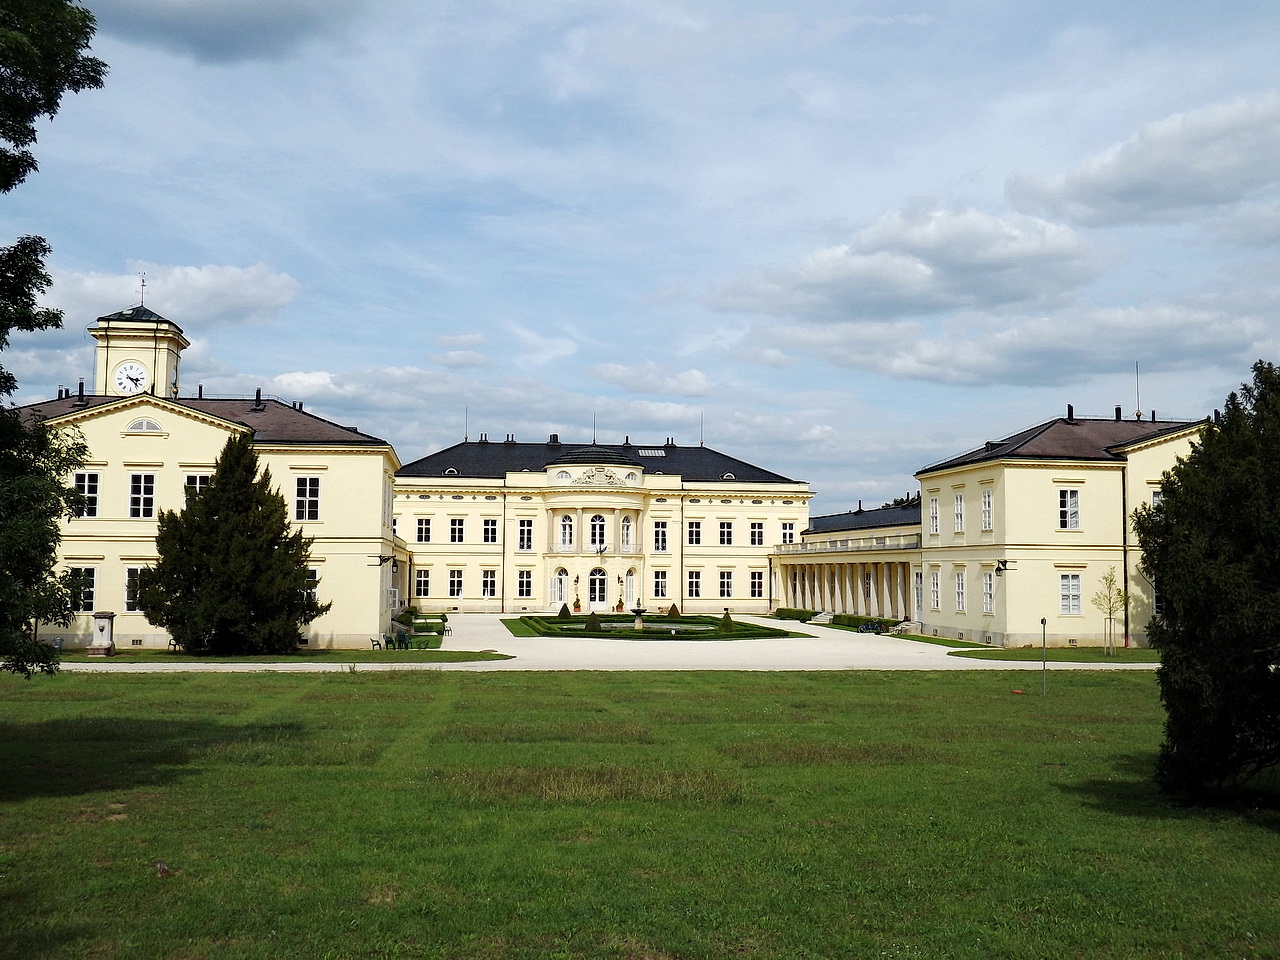 The Károlyi palace in Fehérvárcsurgó